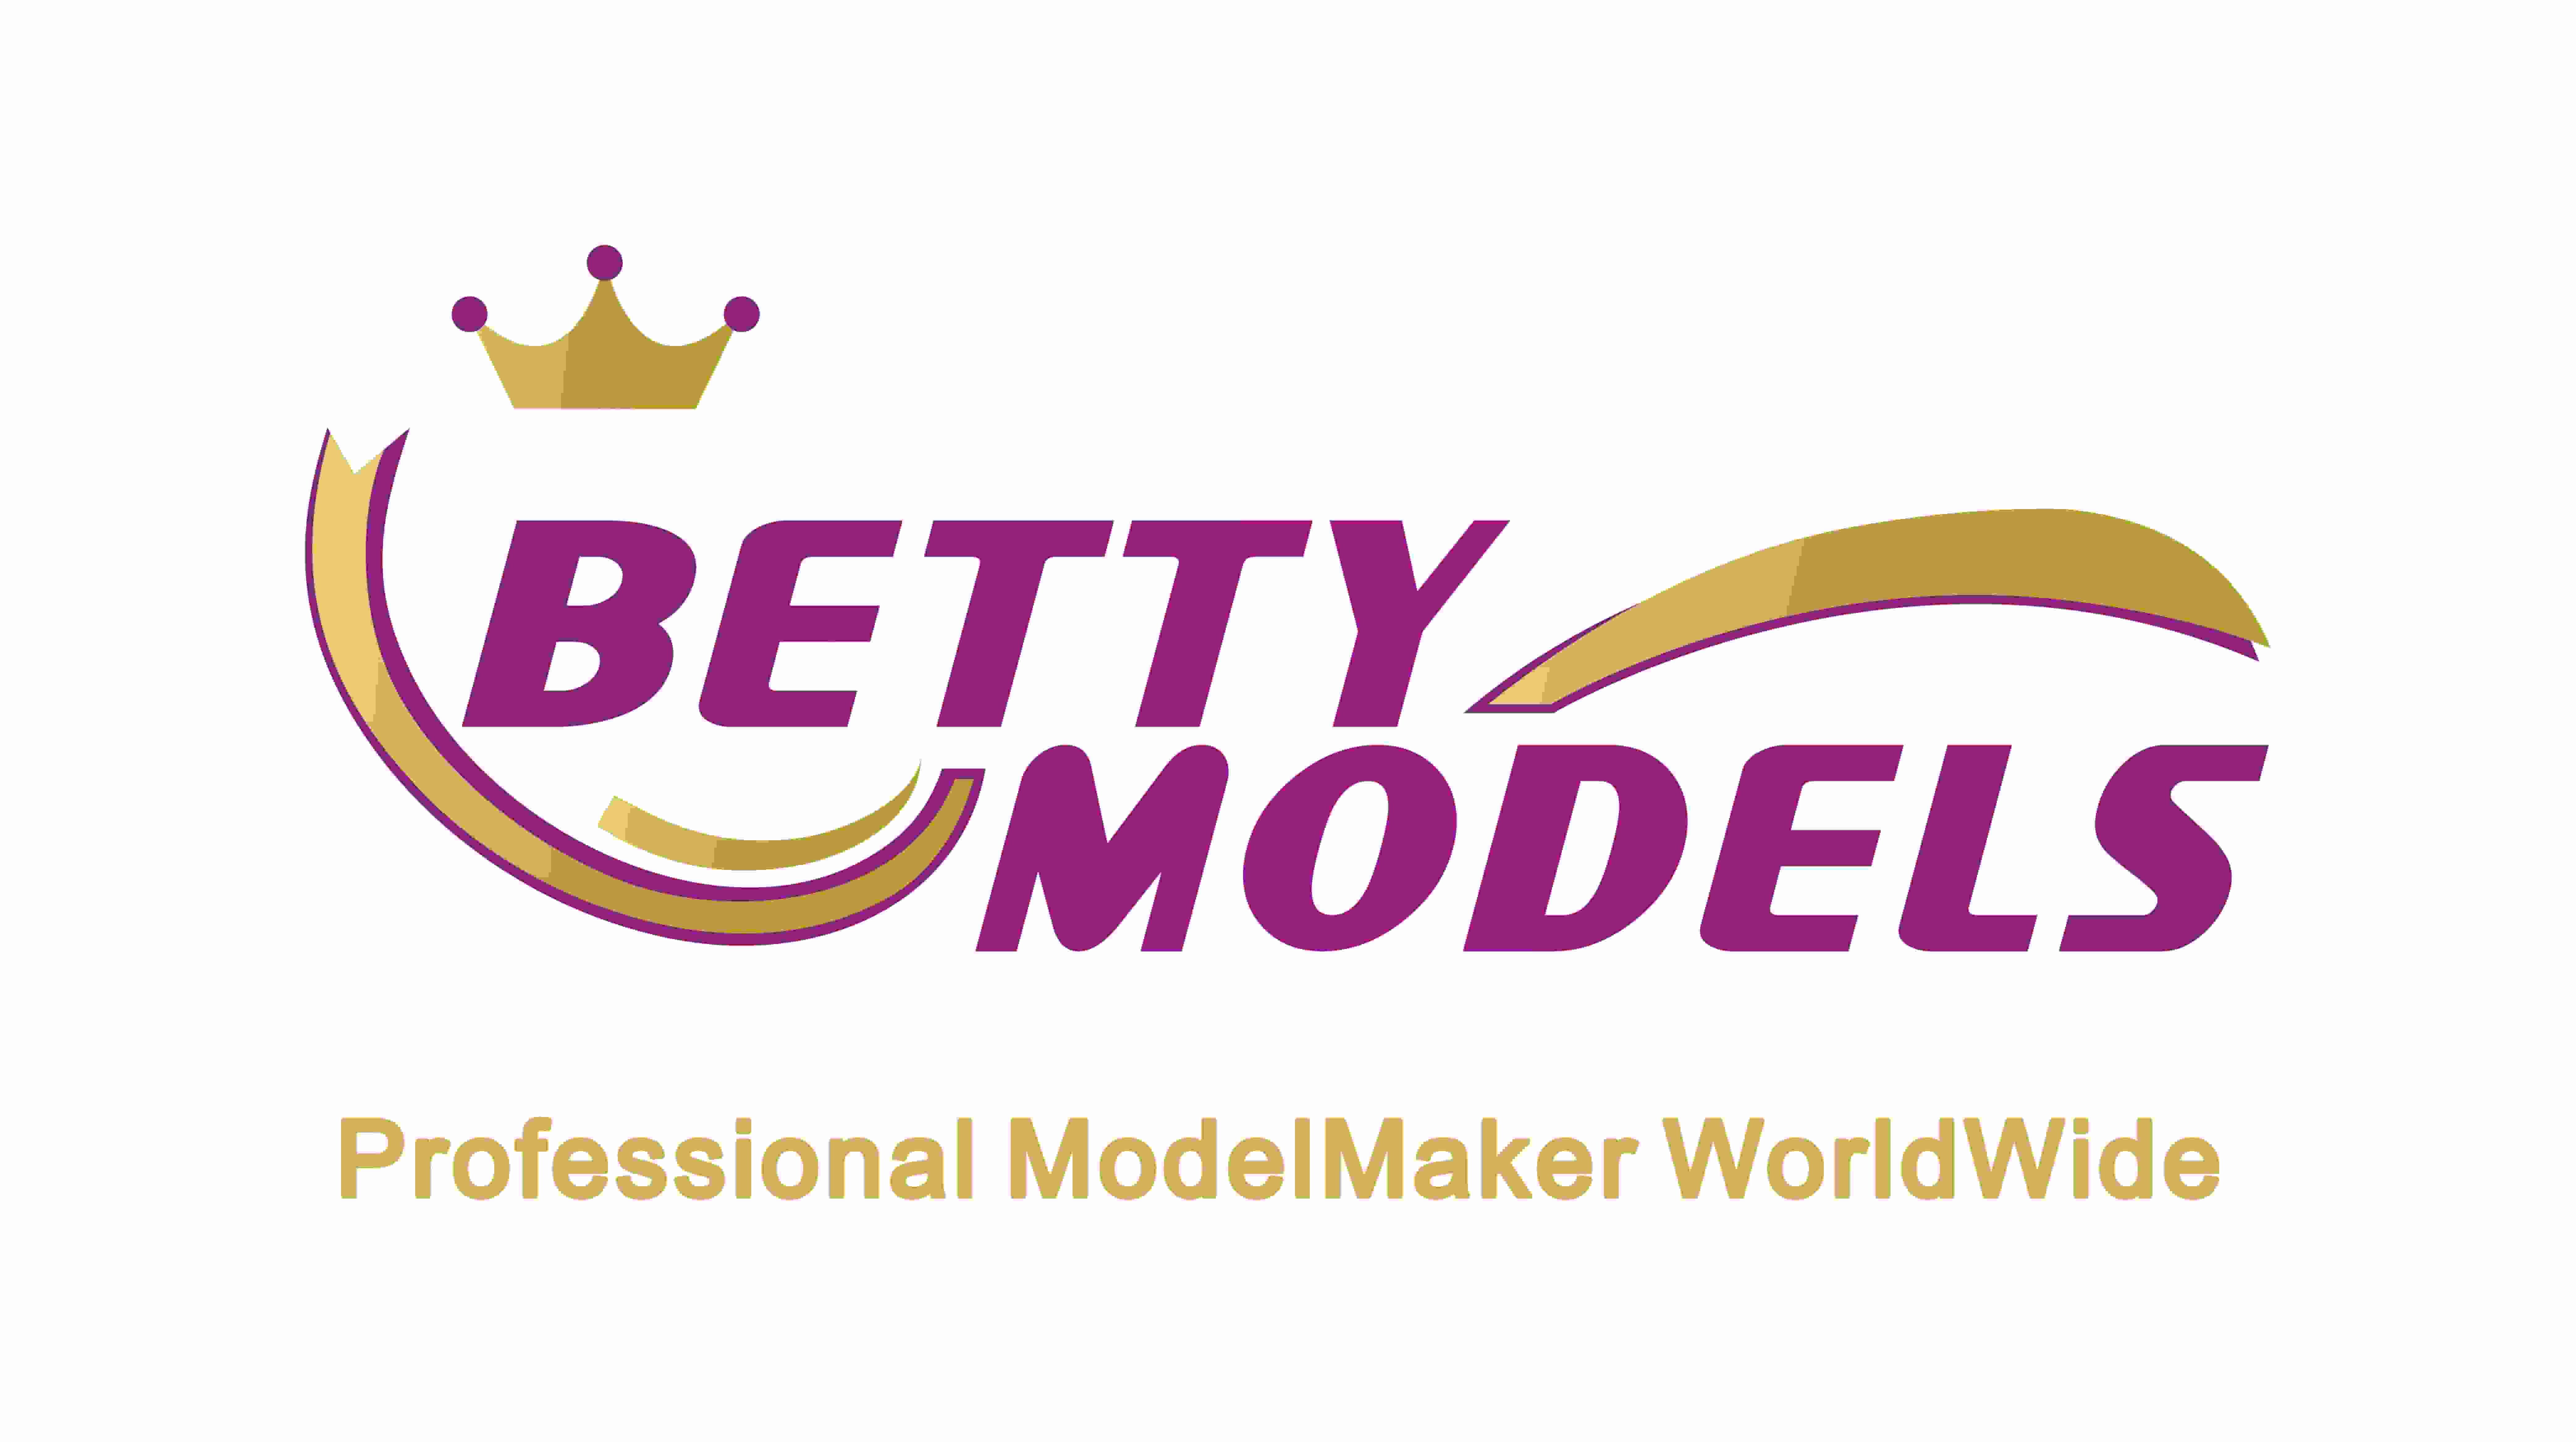 Le logo Betty Models devient un nouveau logo